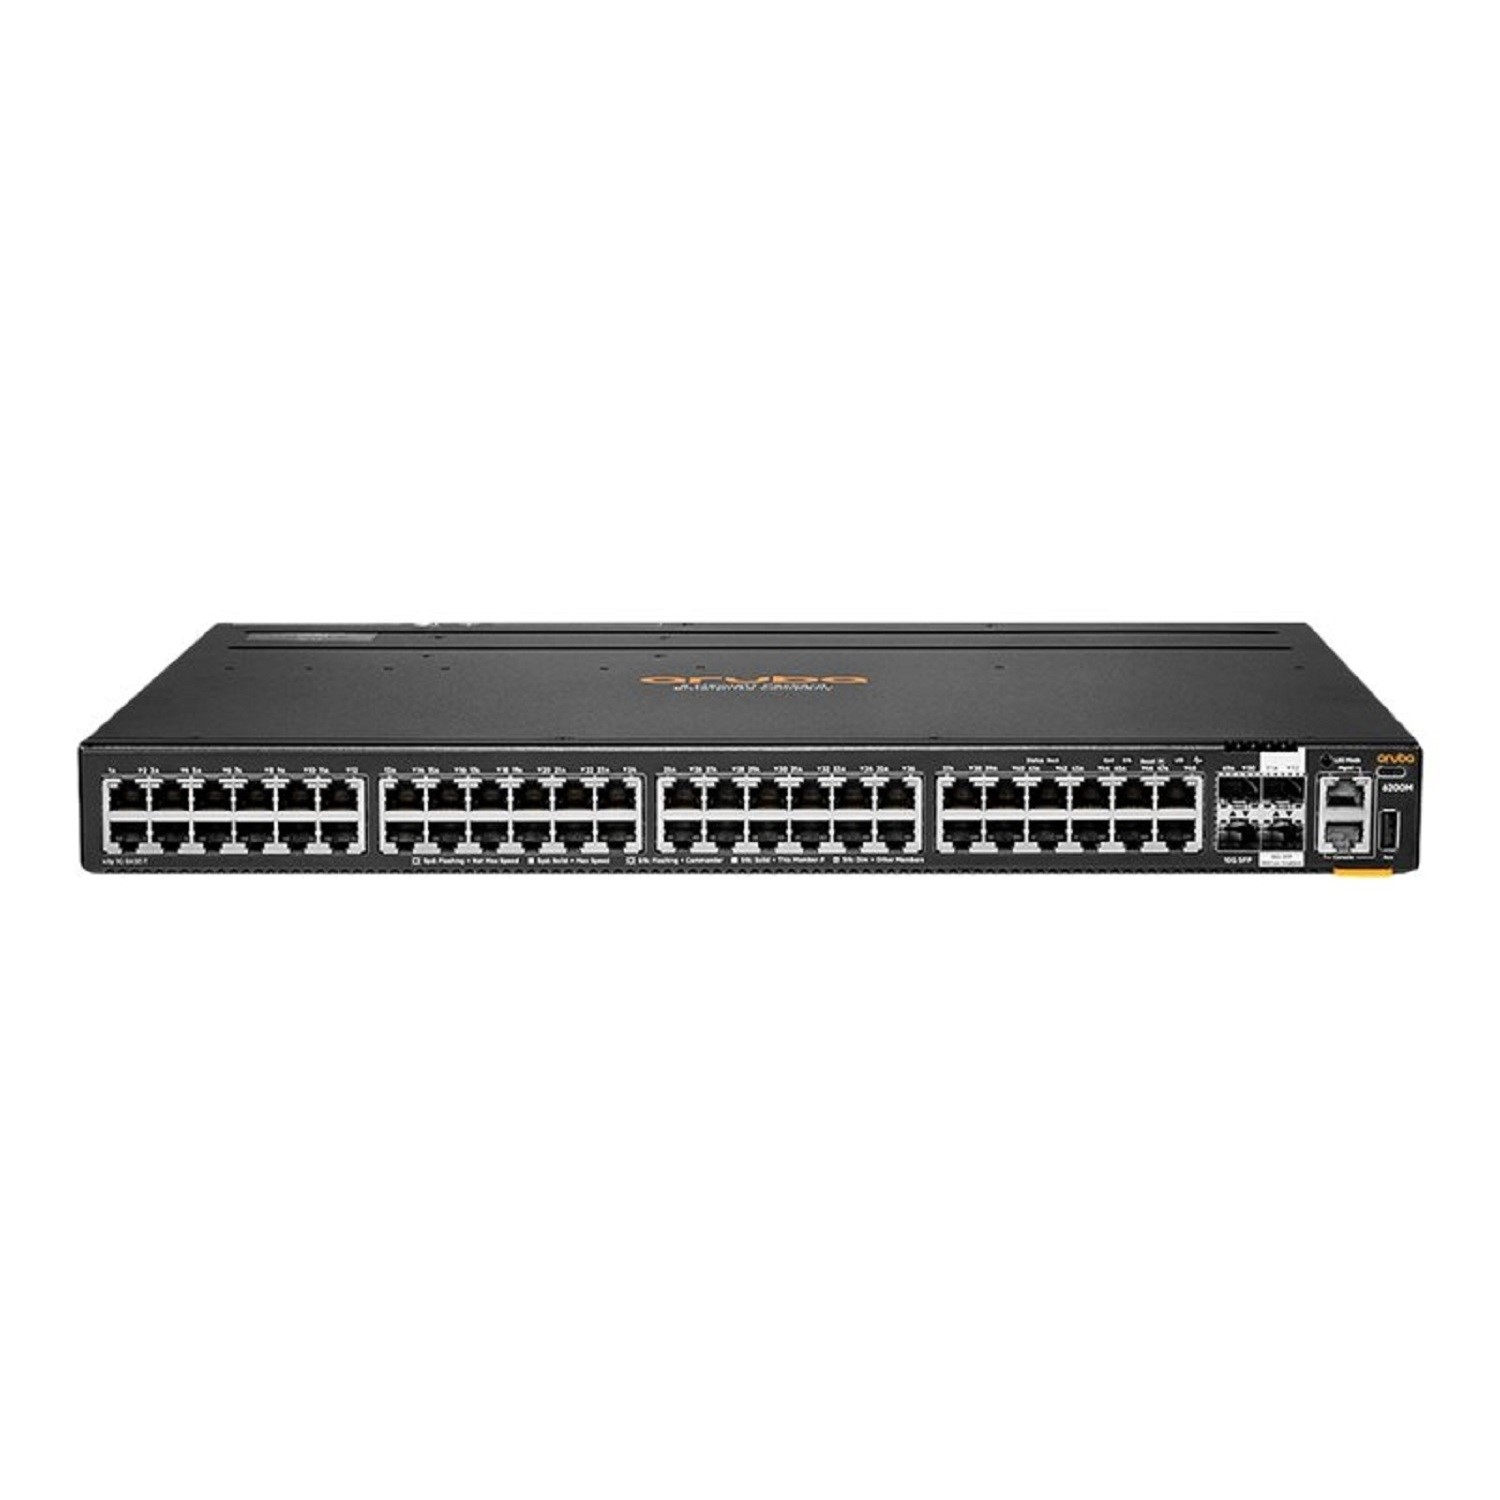 R8Q69A Hewlett-Packard Enterprise 6200M 48G 4SFP+ Switch - Switch - 1 Gbps